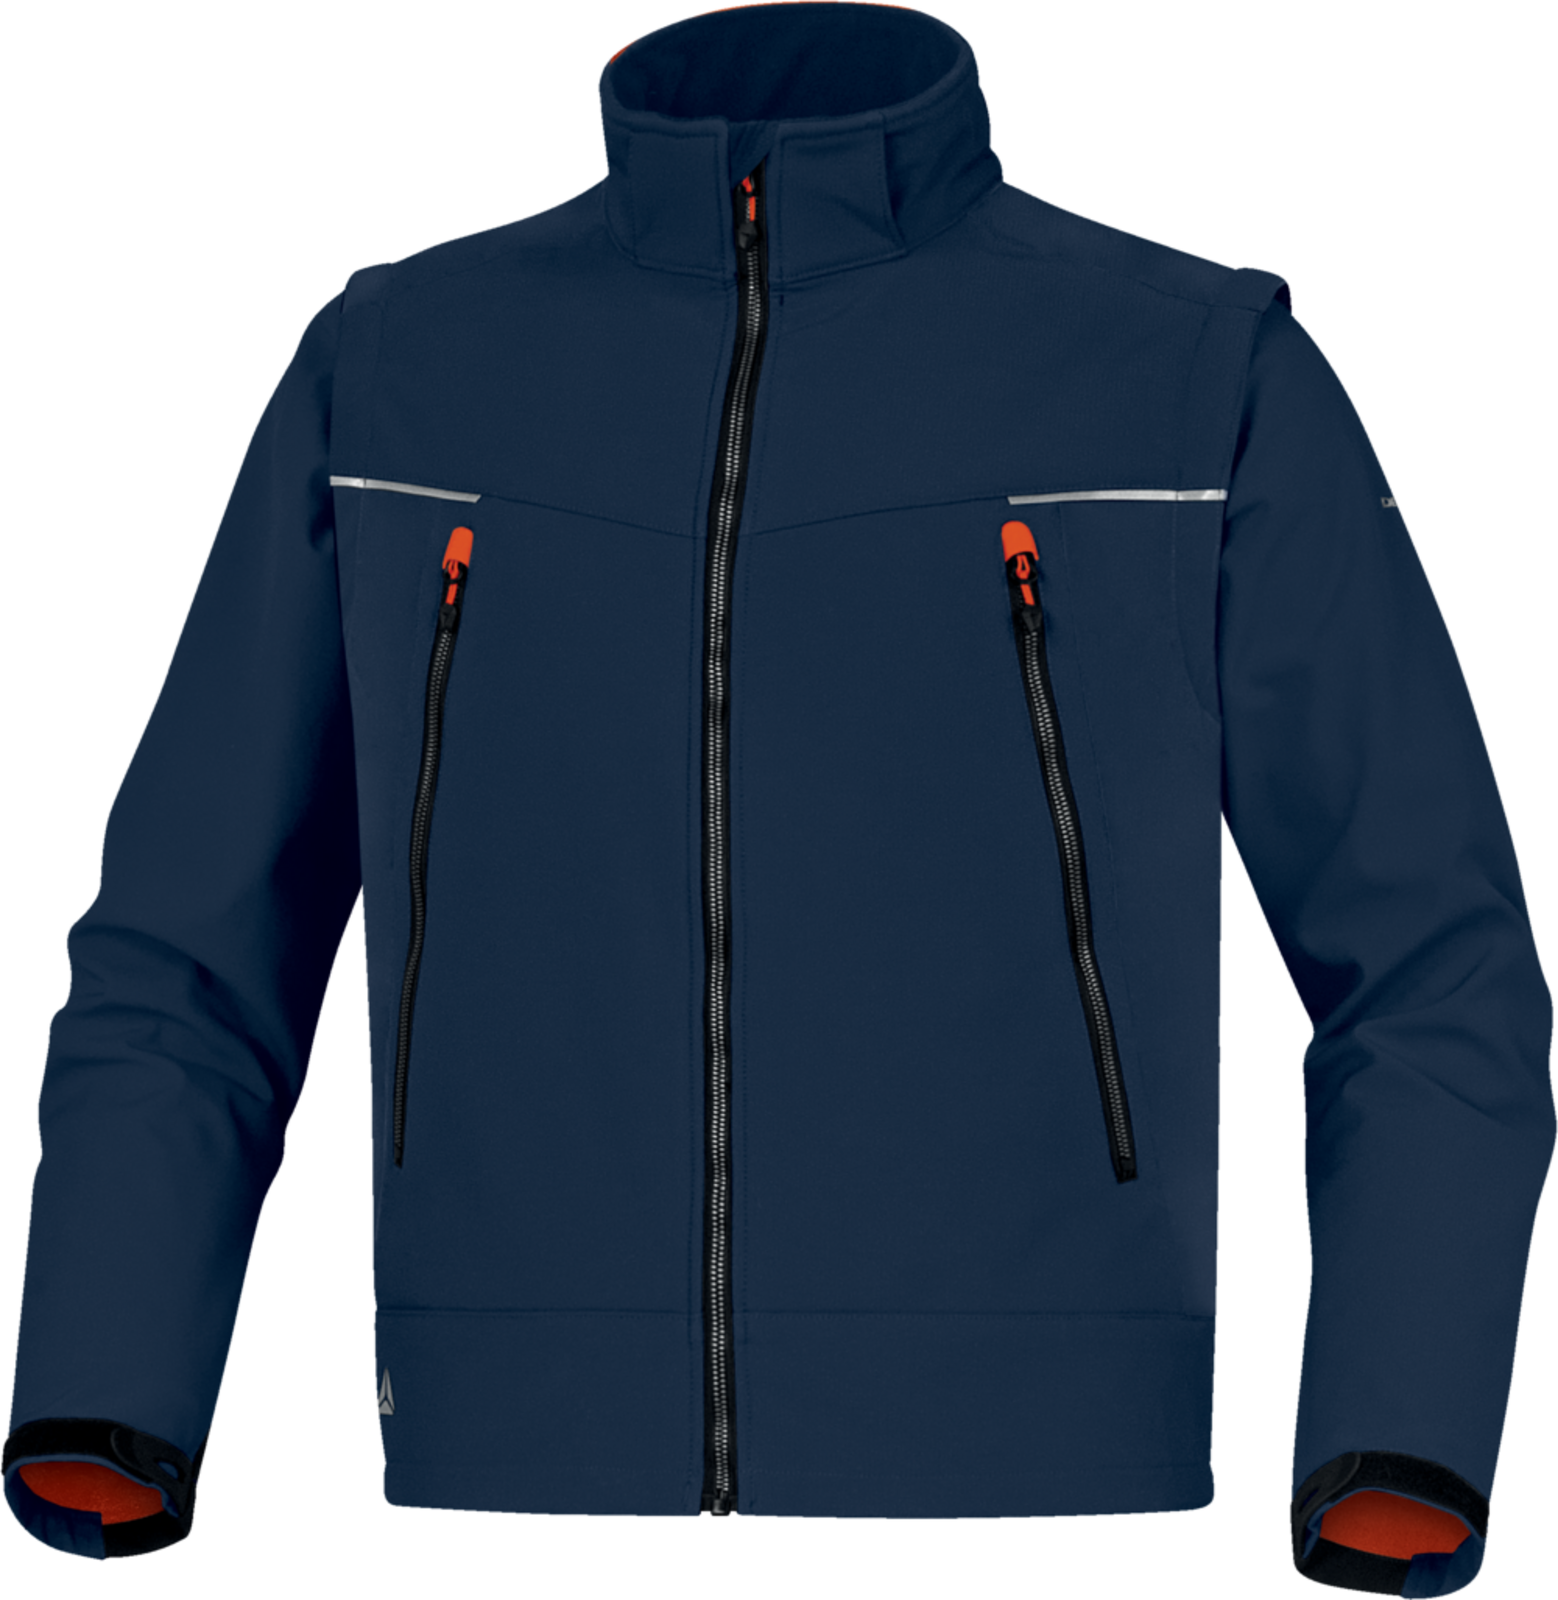 Softshellová bunda Delta Plus Orsa 2v1 - veľkosť: XXL, farba: námornícka modrá/oranžová